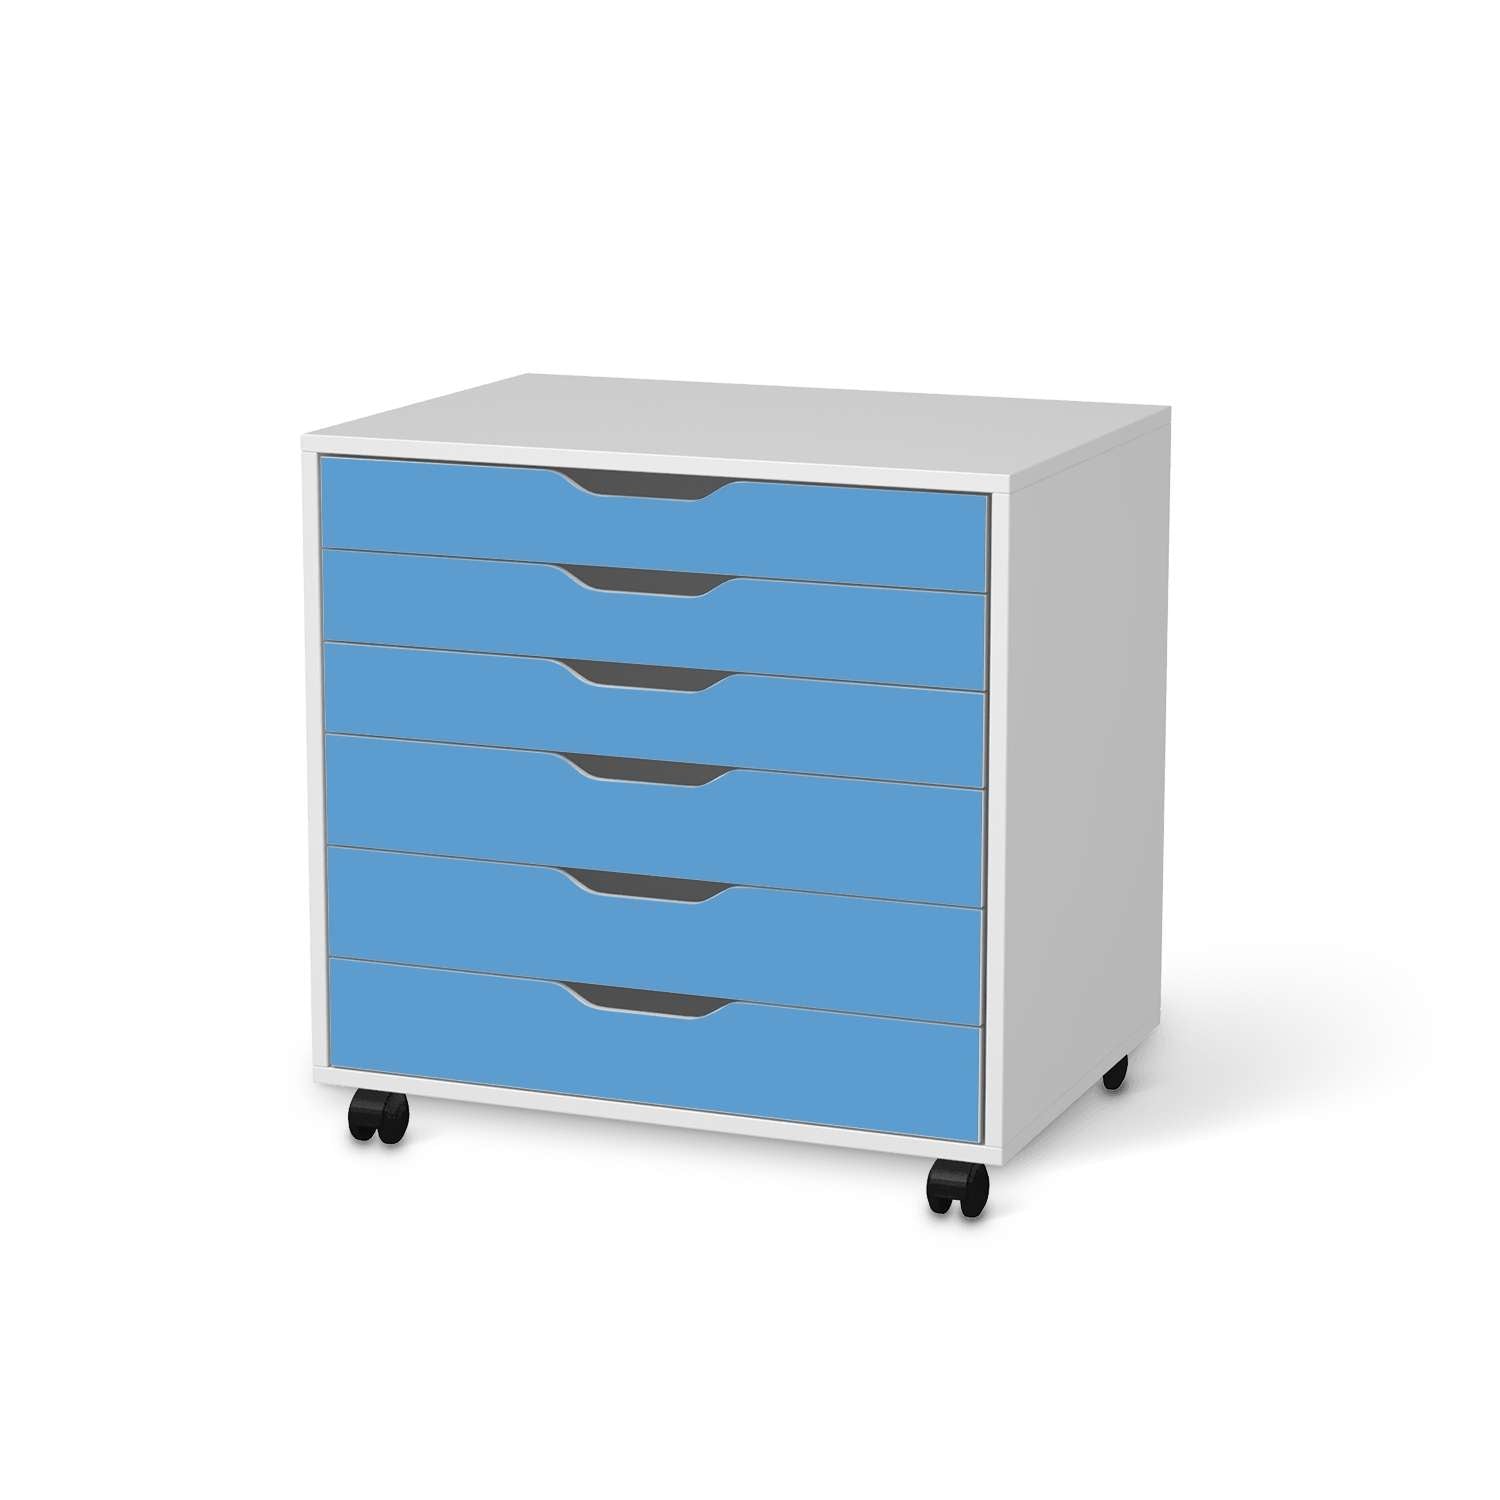 M?belfolie IKEA Alex Rollcontainer 6 Schubladen - Design: Blau Light von creatisto